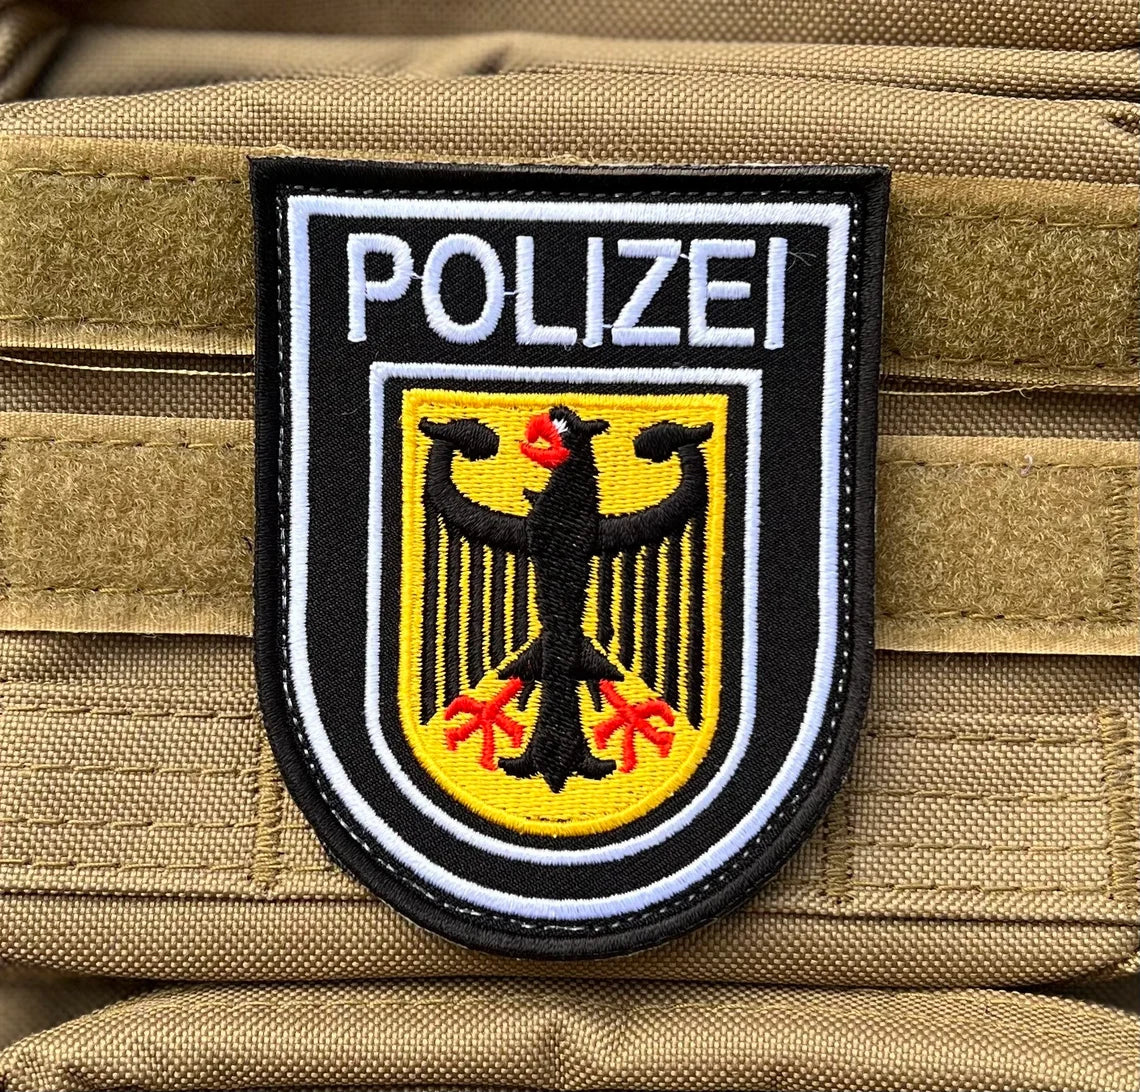 Polizei Deutschland Patch – Police Inch) Badge (3.65 Velcro German